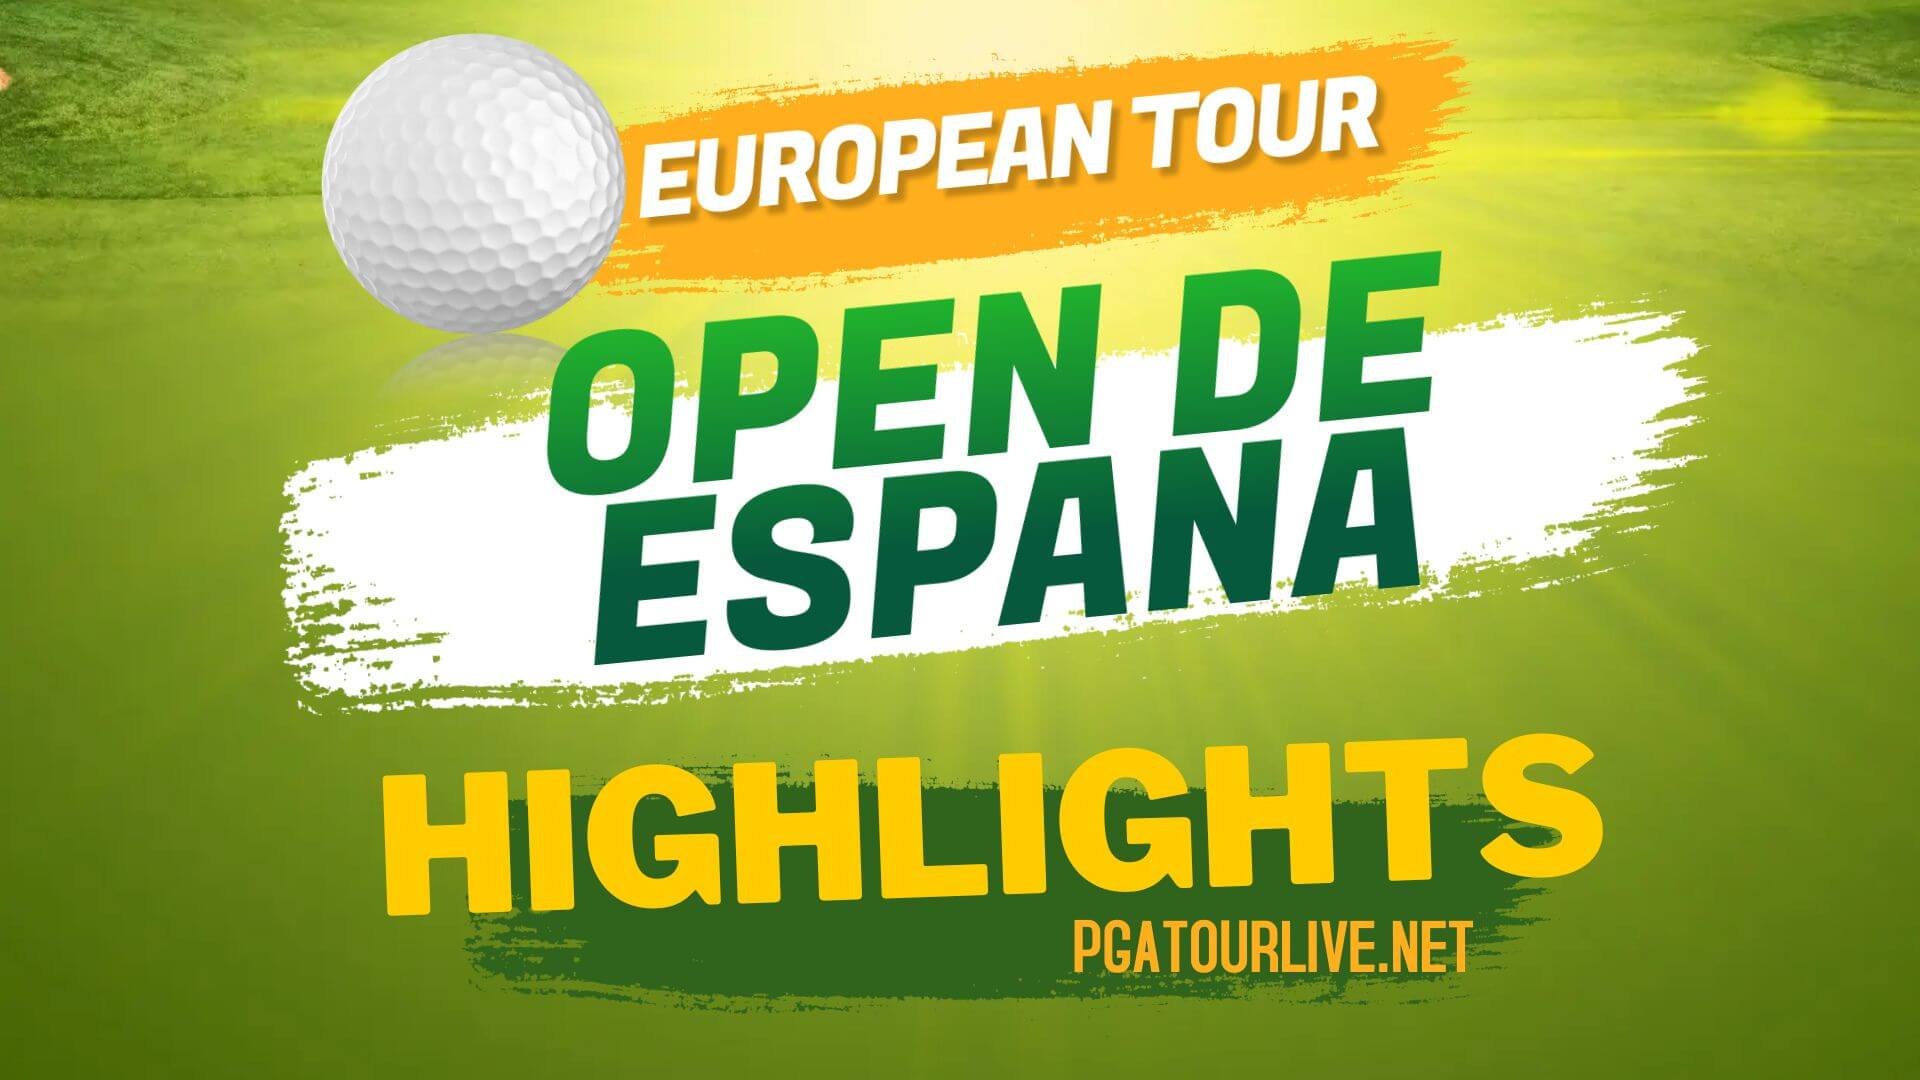 Open De Espana Highlights Day 1 European Tour 2022